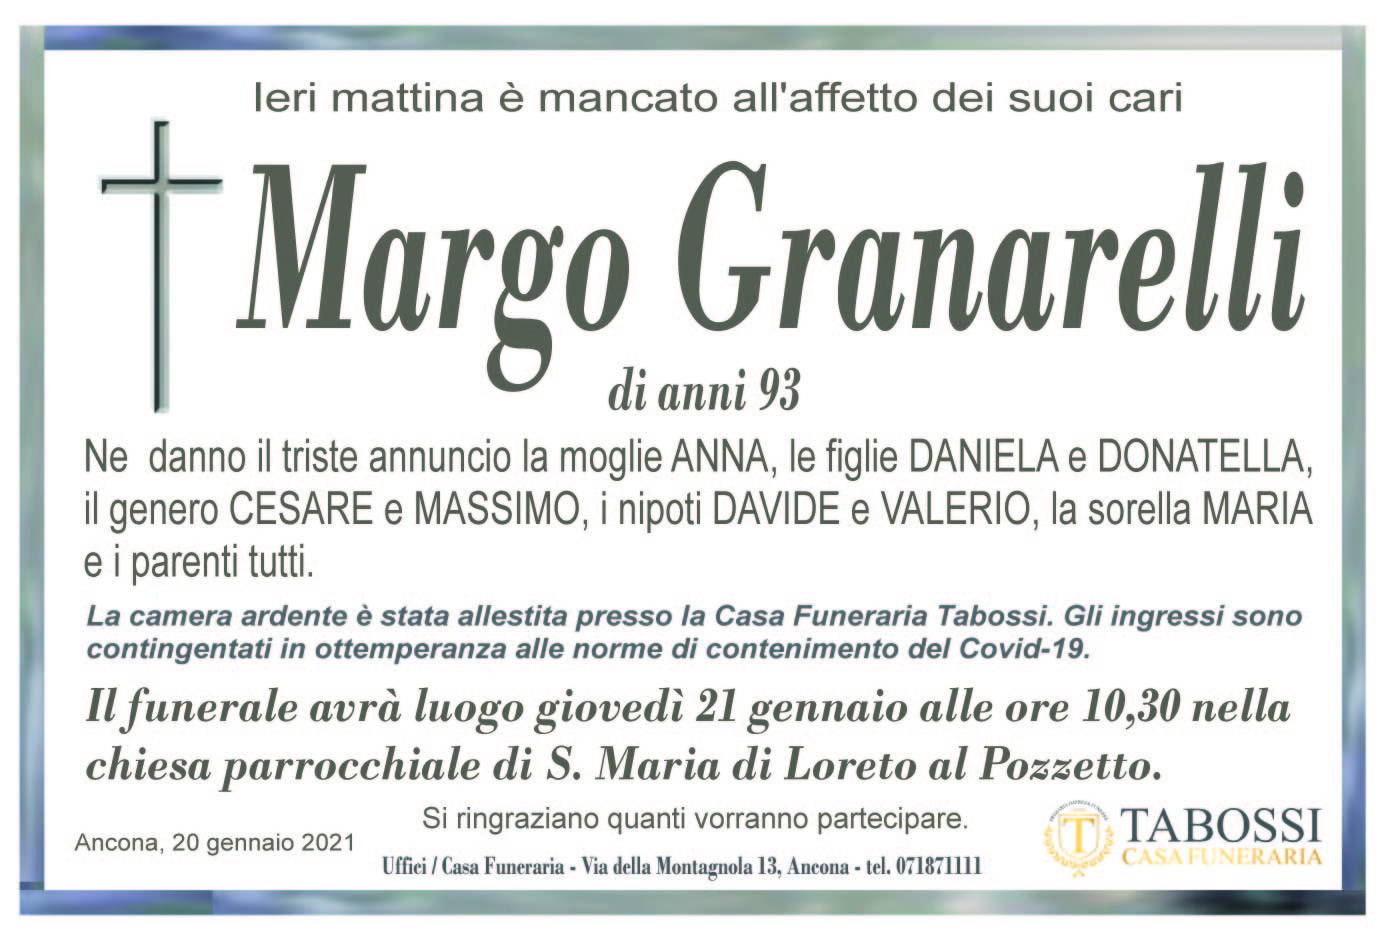 Margo Granarelli